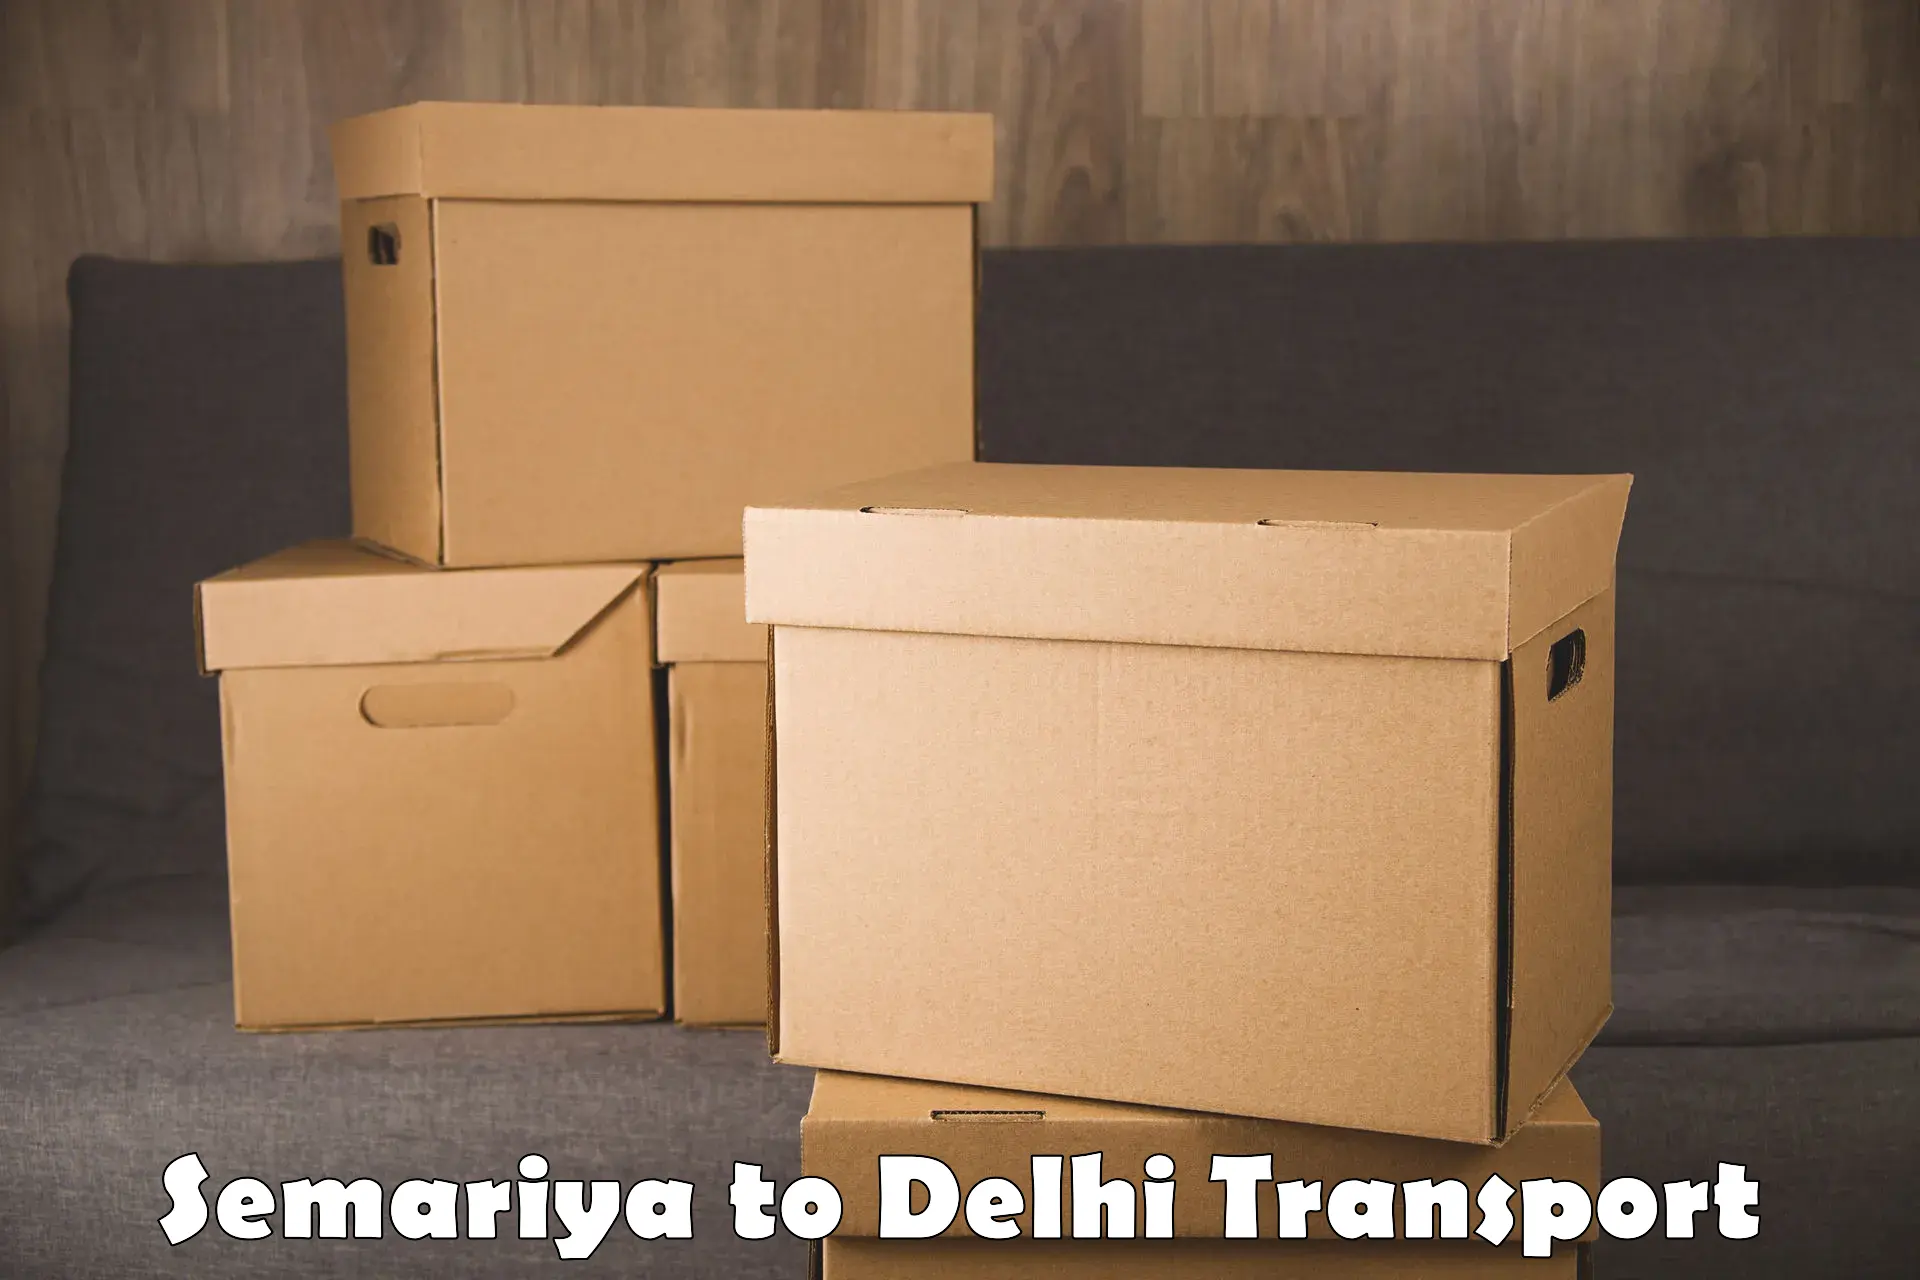 Commercial transport service Semariya to Delhi